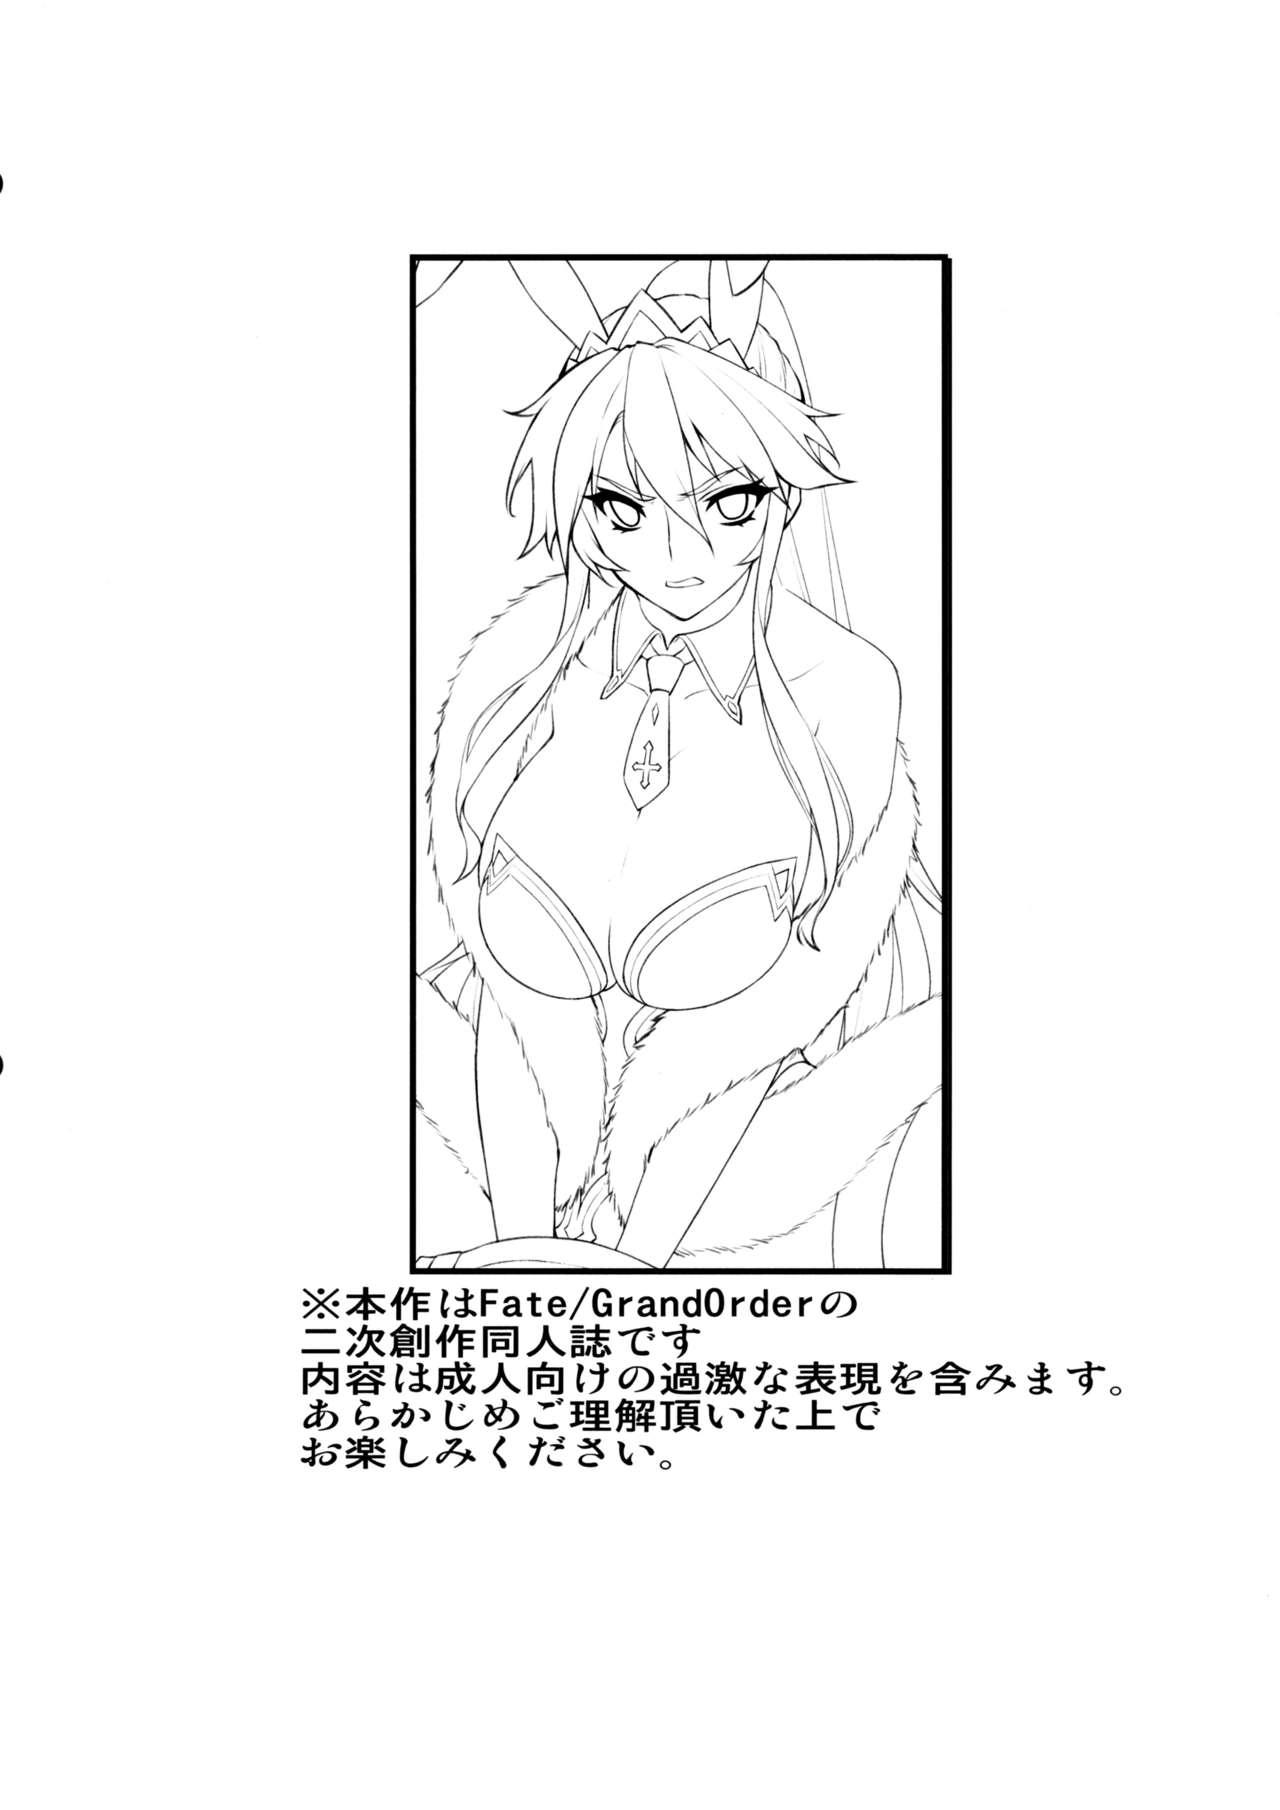 Red Eikou no Rakujitsu - Fate grand order Sex Tape - Page 2